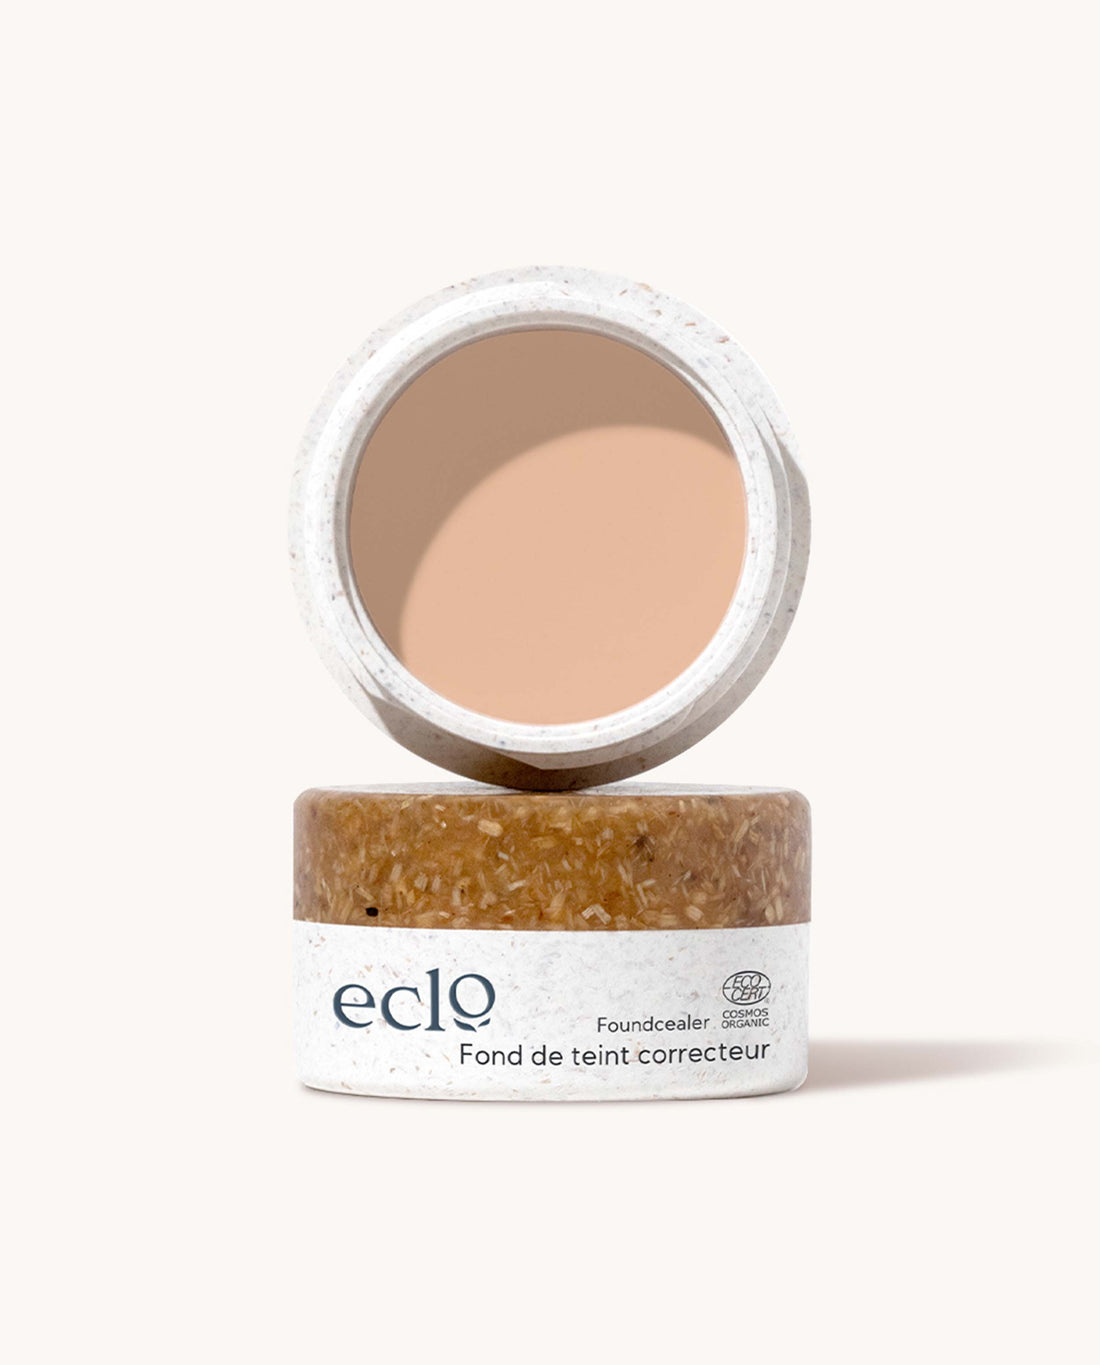 marché commun eclo beauté maquillage fond de teint correcteur naturel biologique Made in France zéro-déchet beige rosé